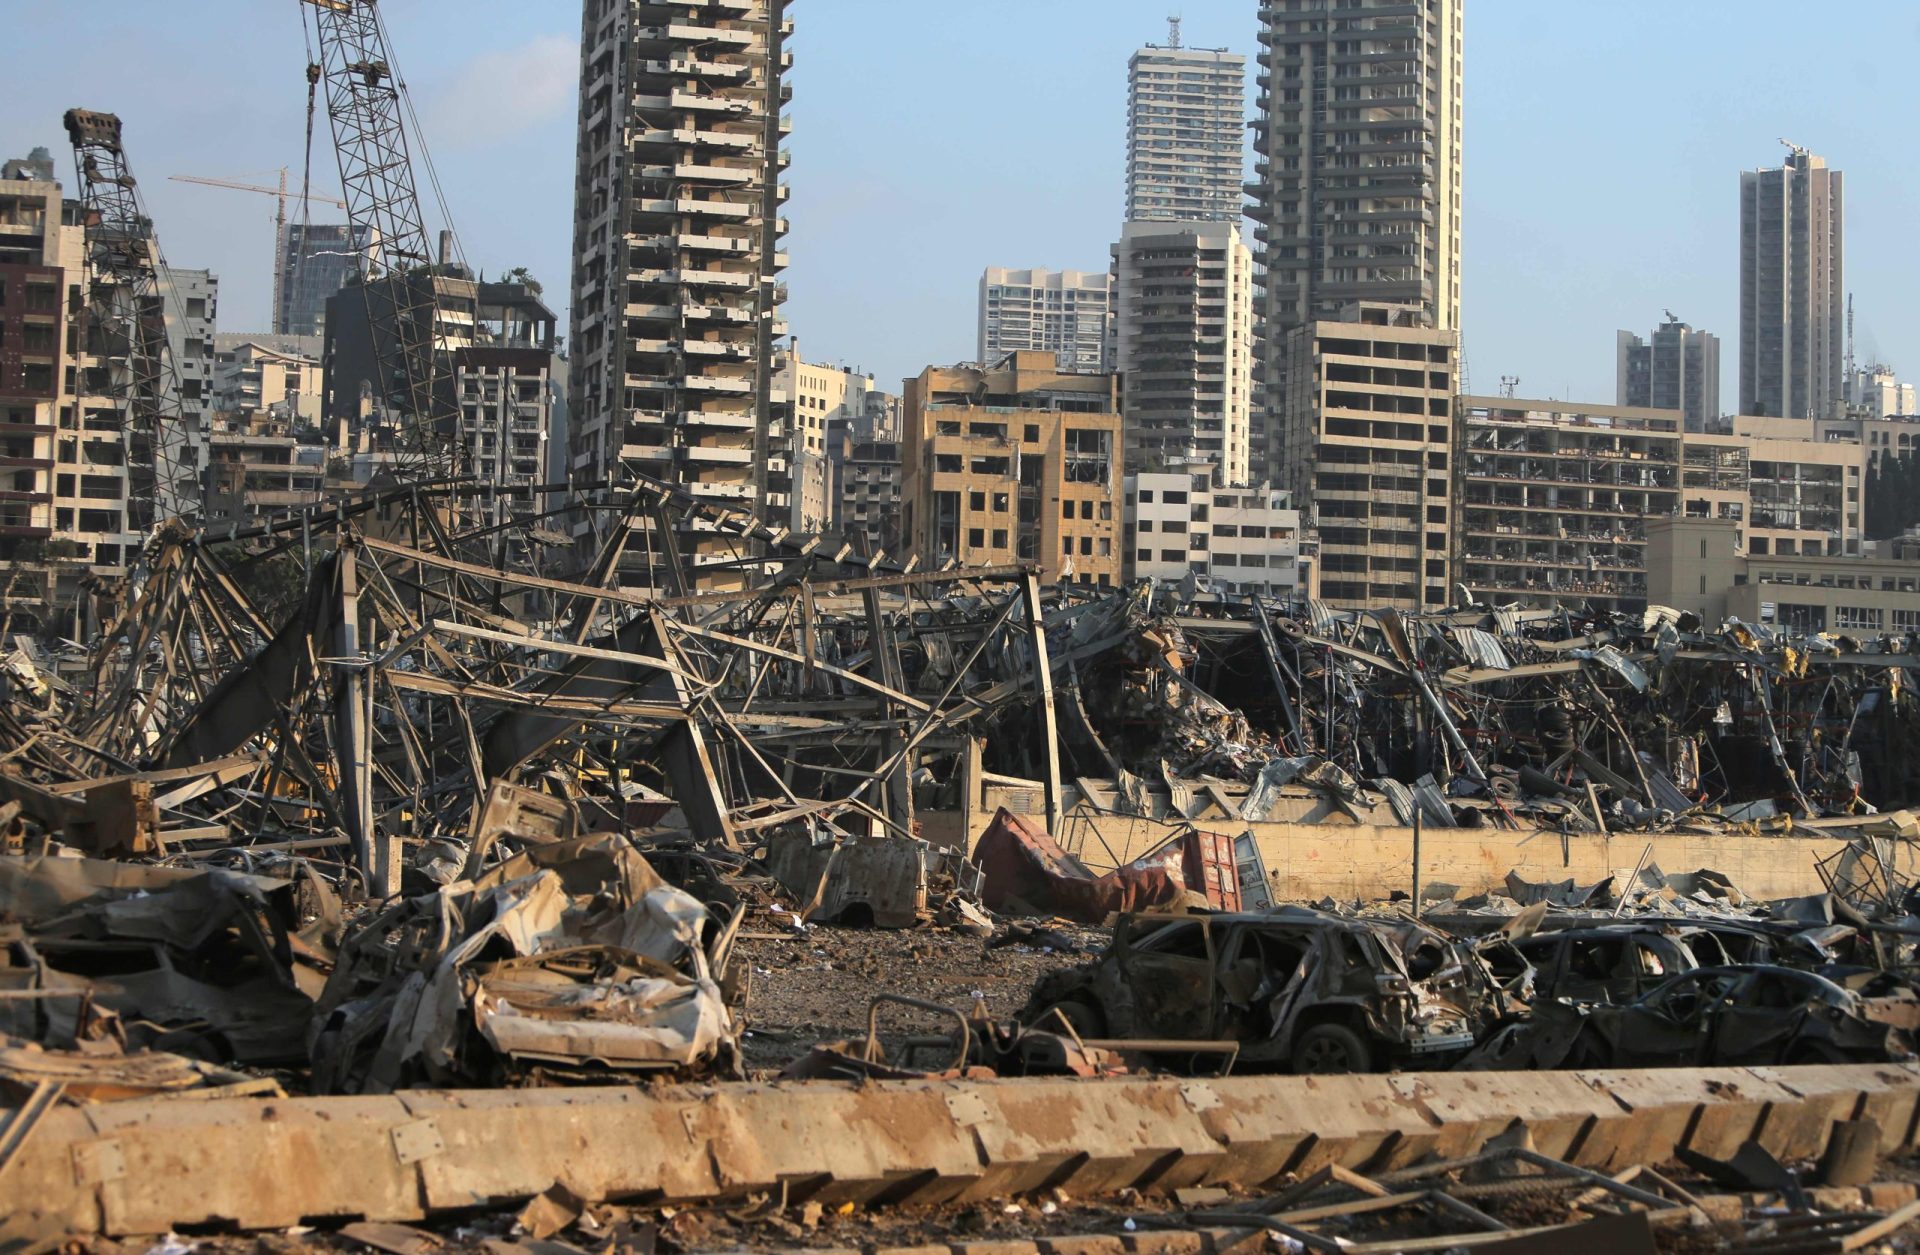 Pelo menos 70 pessoas morreram na explosão em Beirute, confirma ministro da Saúde libanês